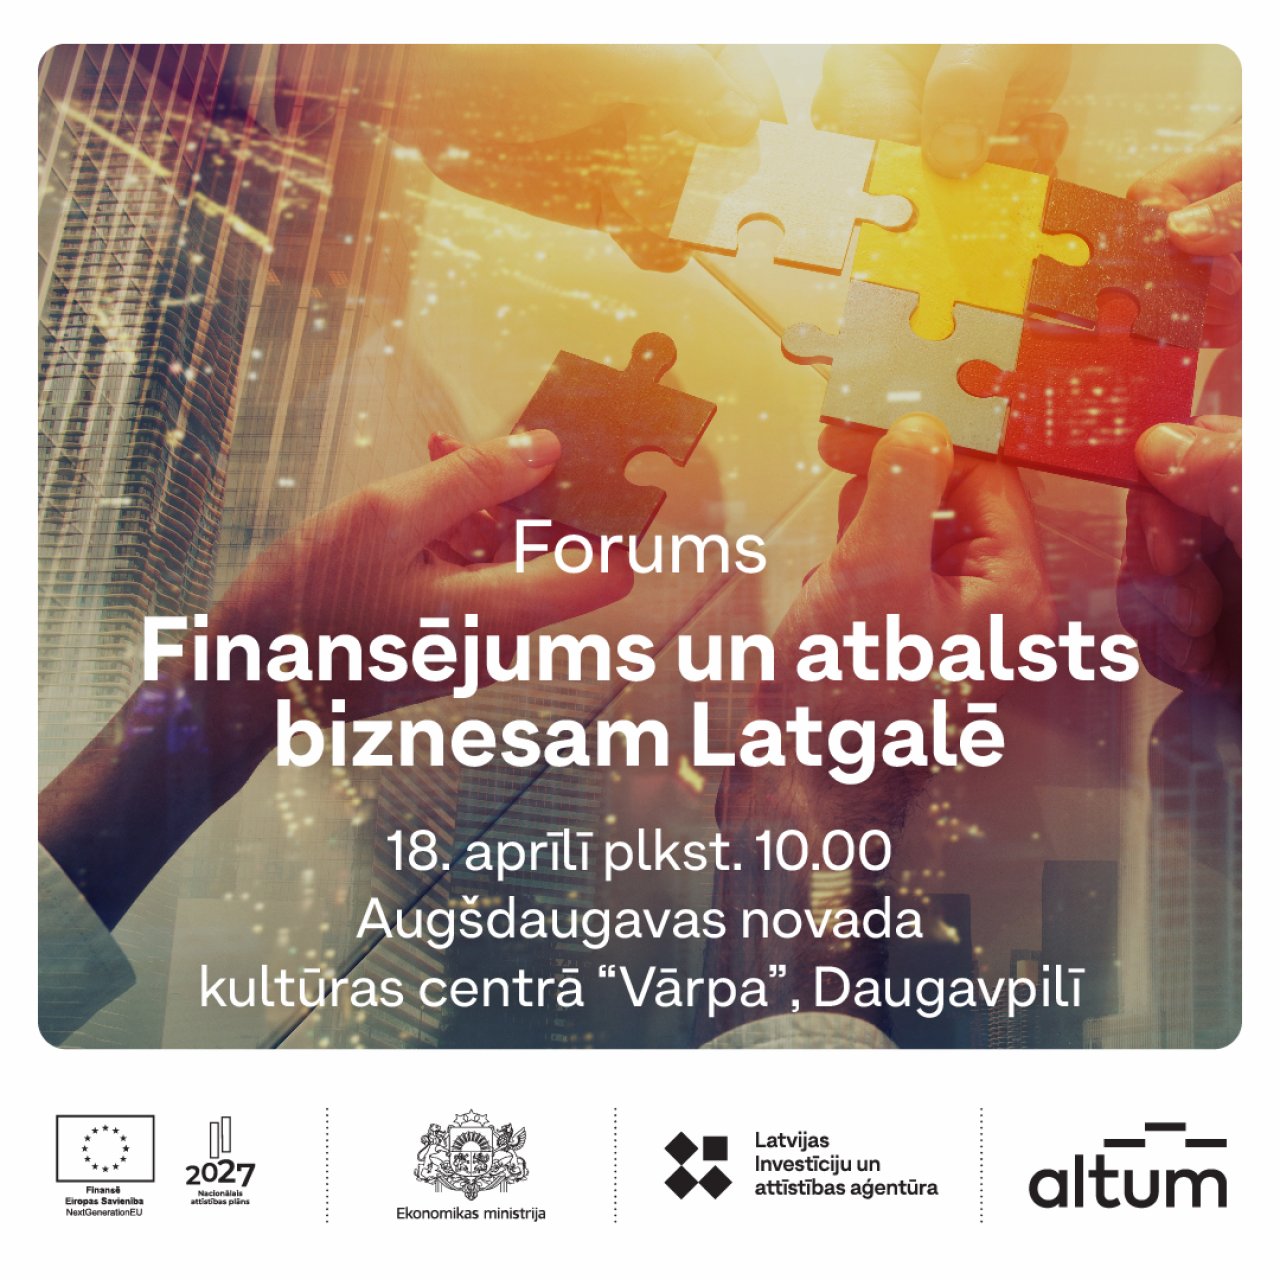 18. aprīlī Daugavpilī notiks forums uzņēmējiem par atbalstu biznesam Latgalē